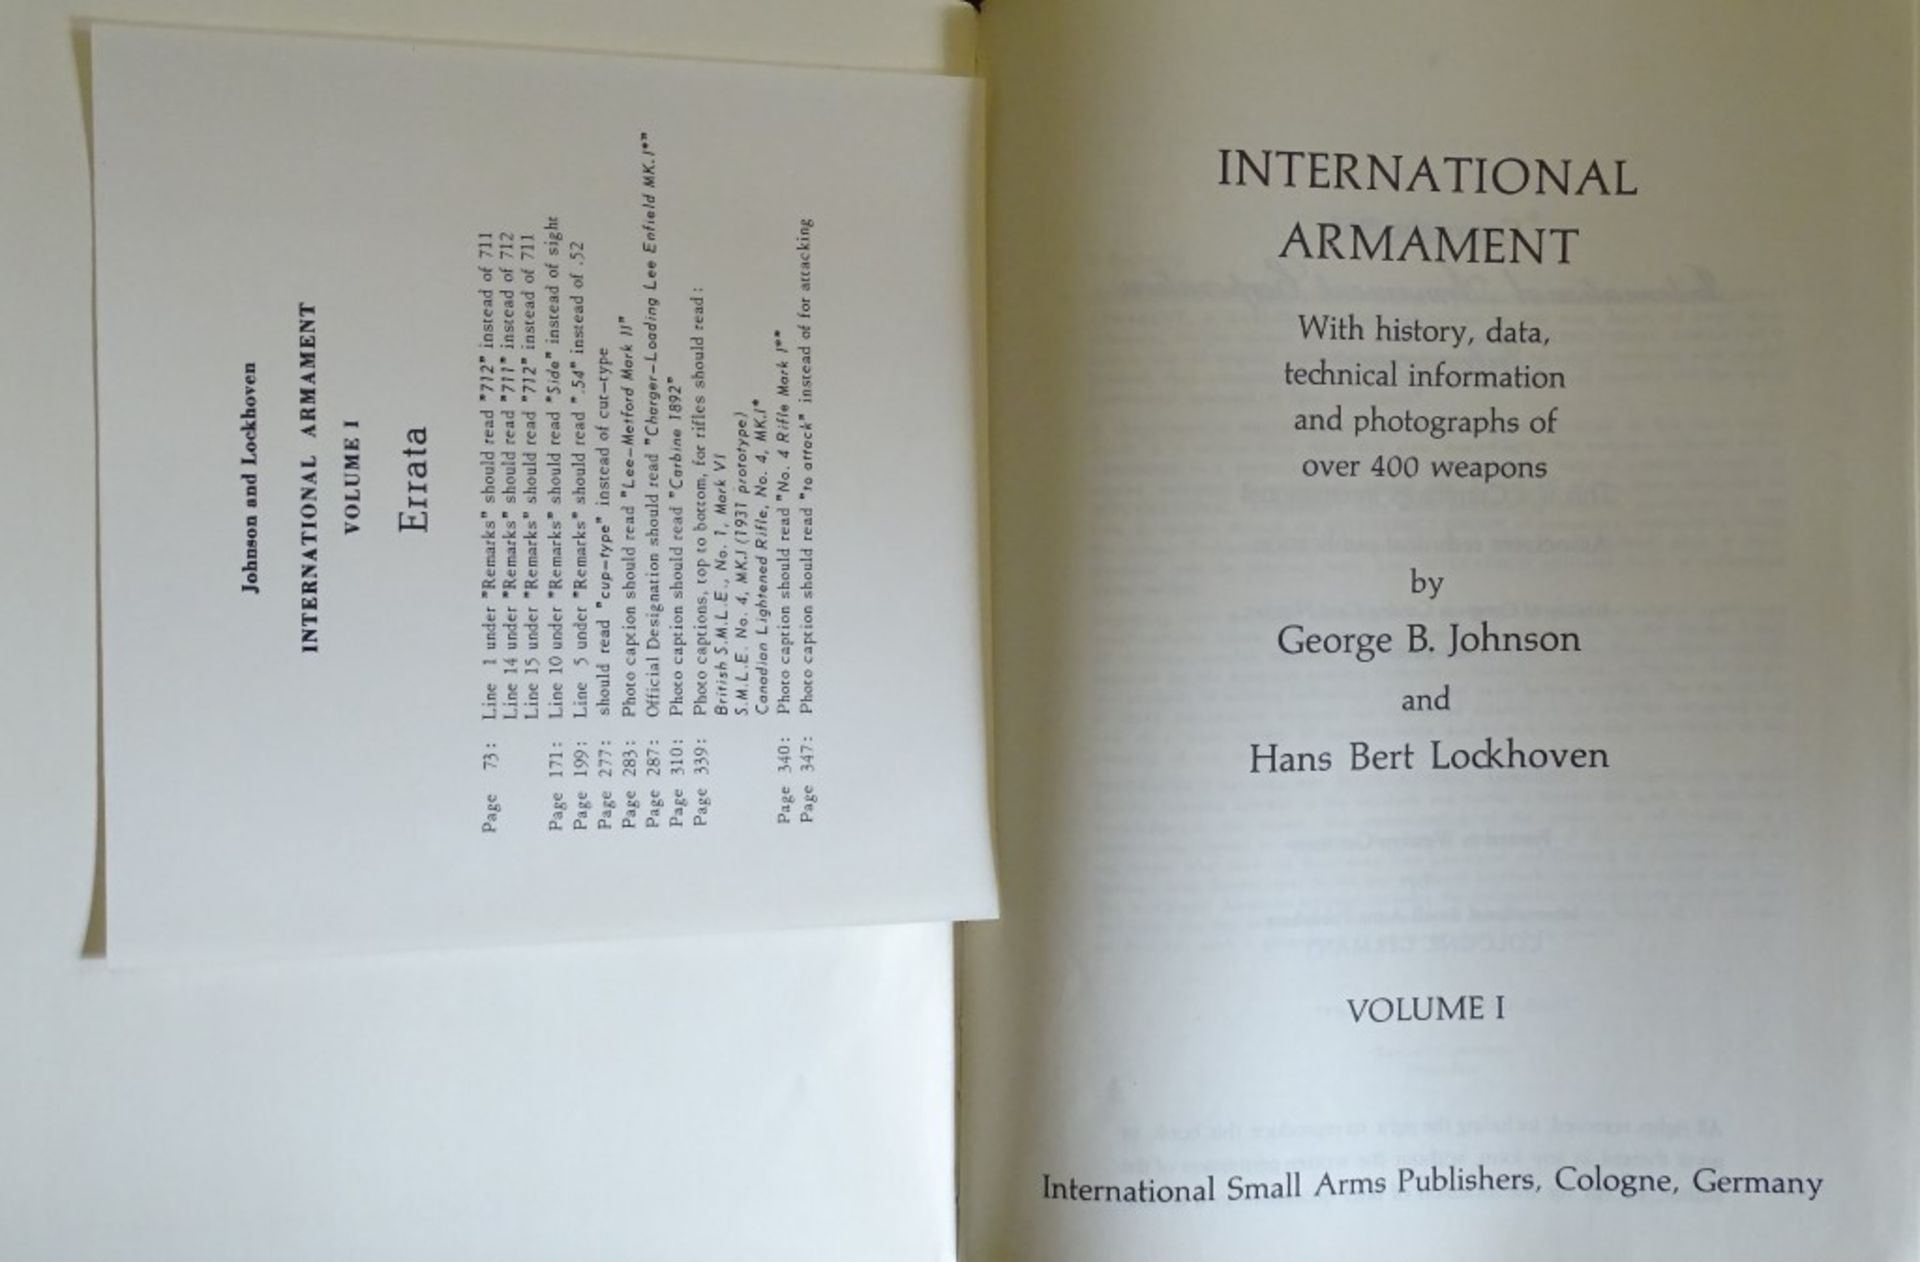 Zwei Bände über Internationale Bewaffnung,Geschichte und technischen Informationen über 400 Waffen. - Bild 2 aus 10